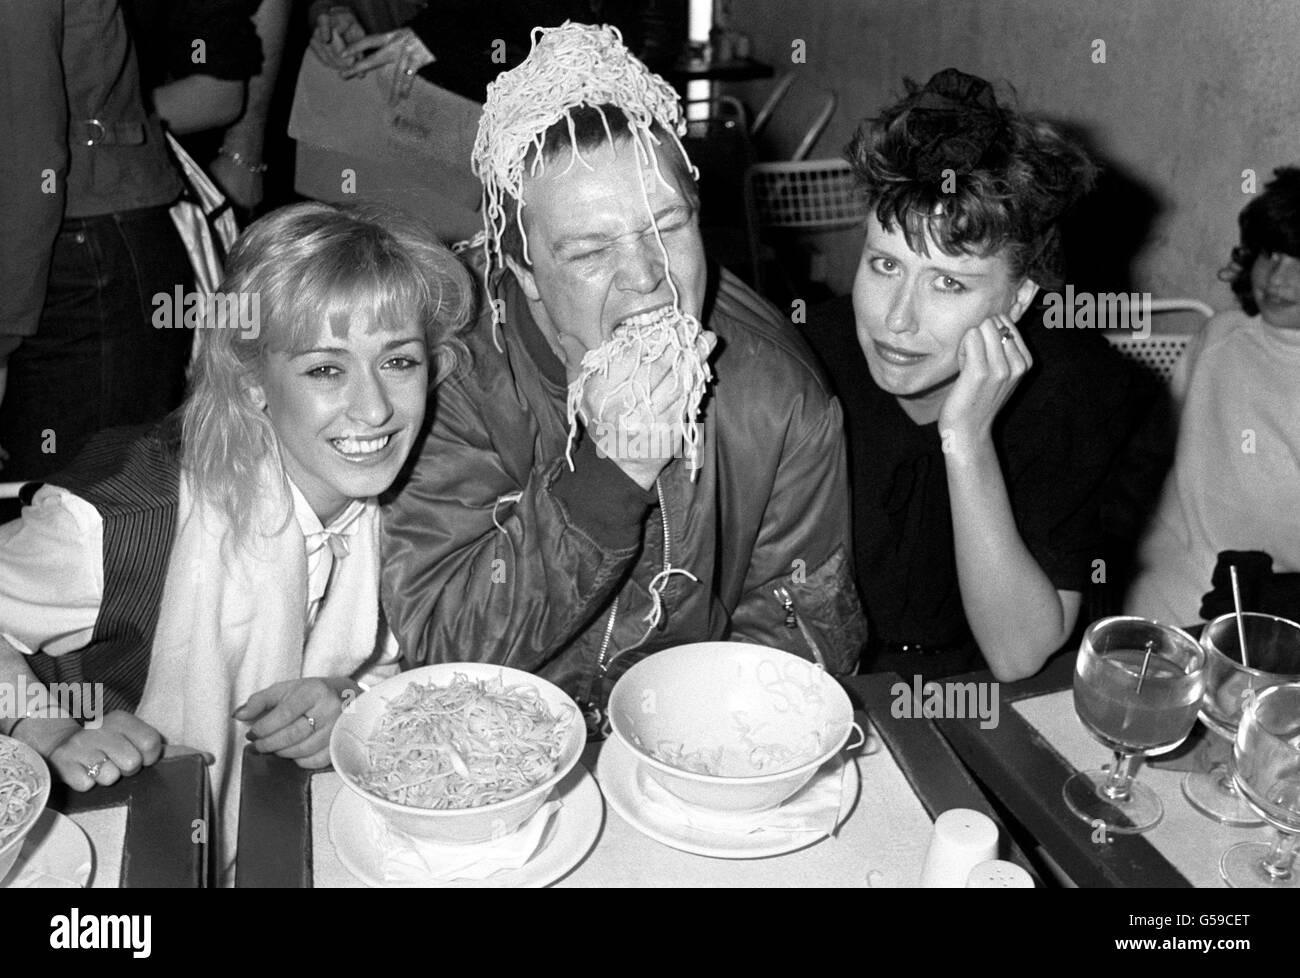 Le chanteur Buster Bloodvaisseau du groupe Bad Manners se livre à des spaghetti au Fatso's Pasta joint à Londres, où il faisait partie de l'équipe de jugement dans un concours de nourriture à spaghetti.Assis avec Buster sont Tereza Bazar (L) du groupe pop Dollar et chanteur/actrice Hazel O'Connor.(R) Banque D'Images